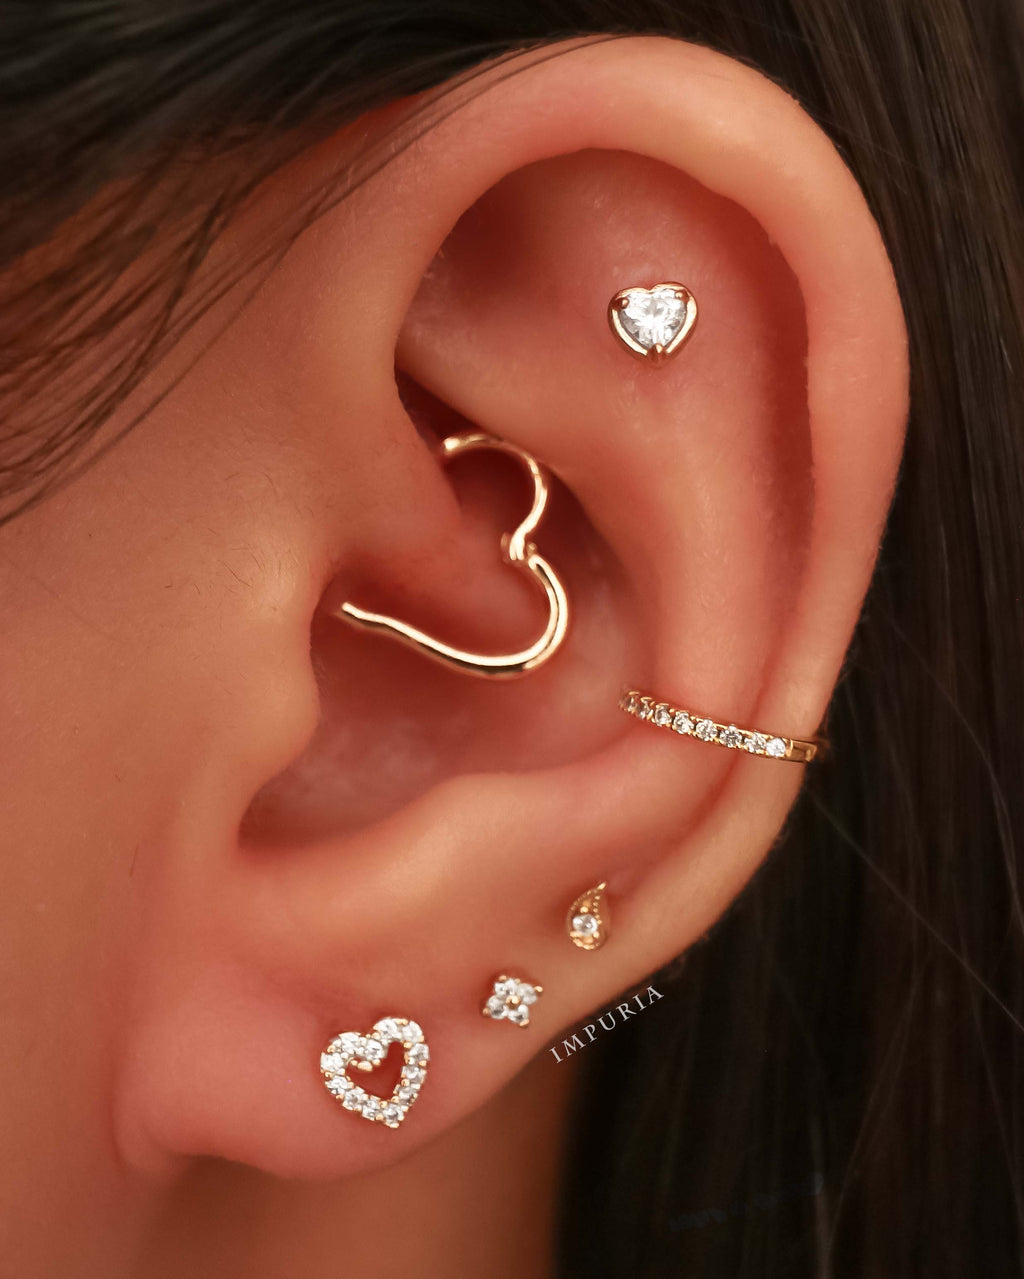 OUFER Women's Heart Daith Piercing Jewelry